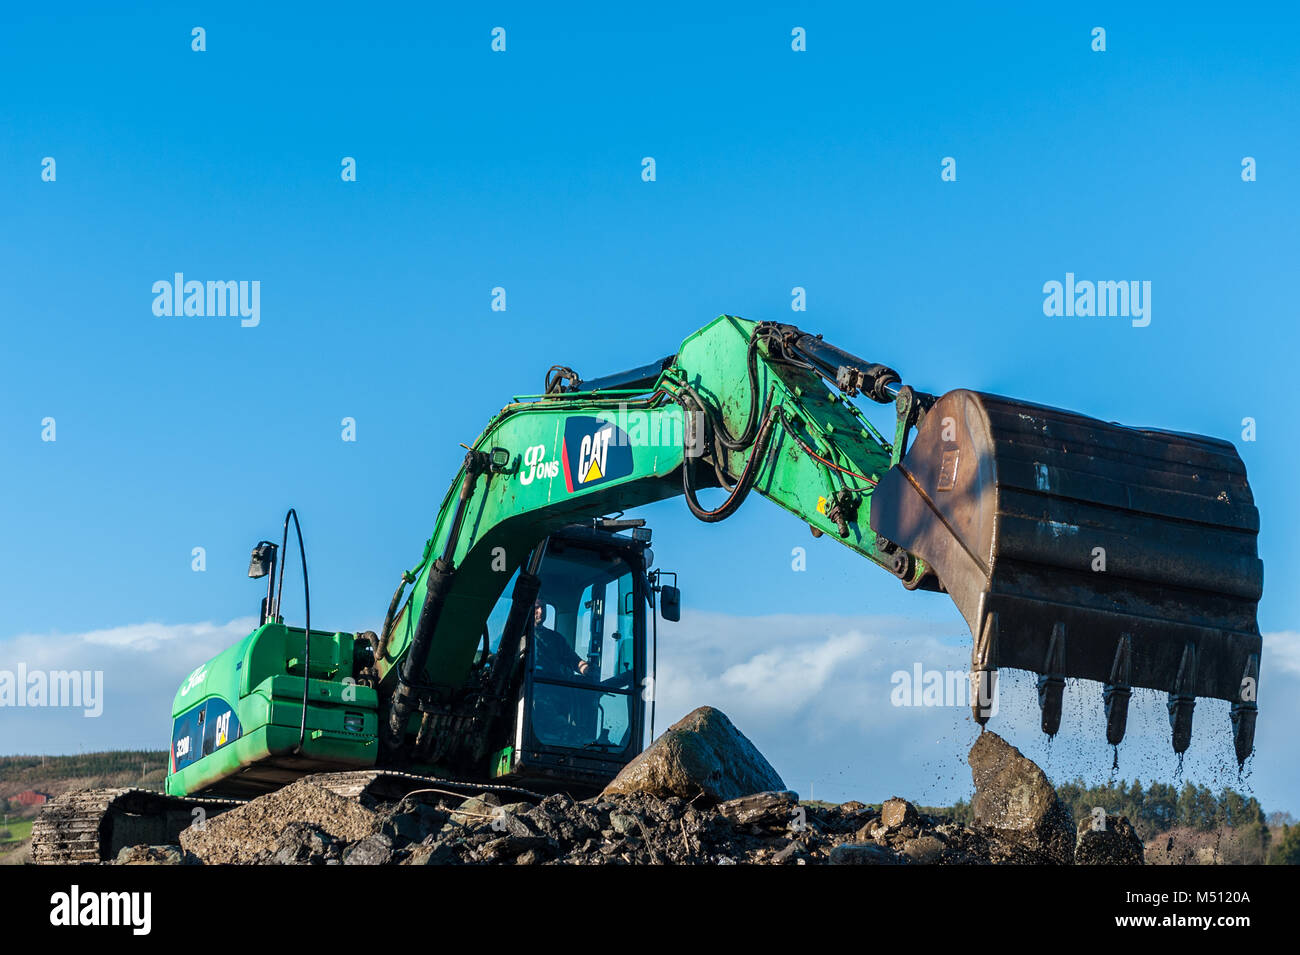 Excavatrice Caterpillar CAT 320D au travail déménagement terre/pierres avec ciel bleu et copie espace dans Skibbereen, comté de Cork, Irlande. Banque D'Images